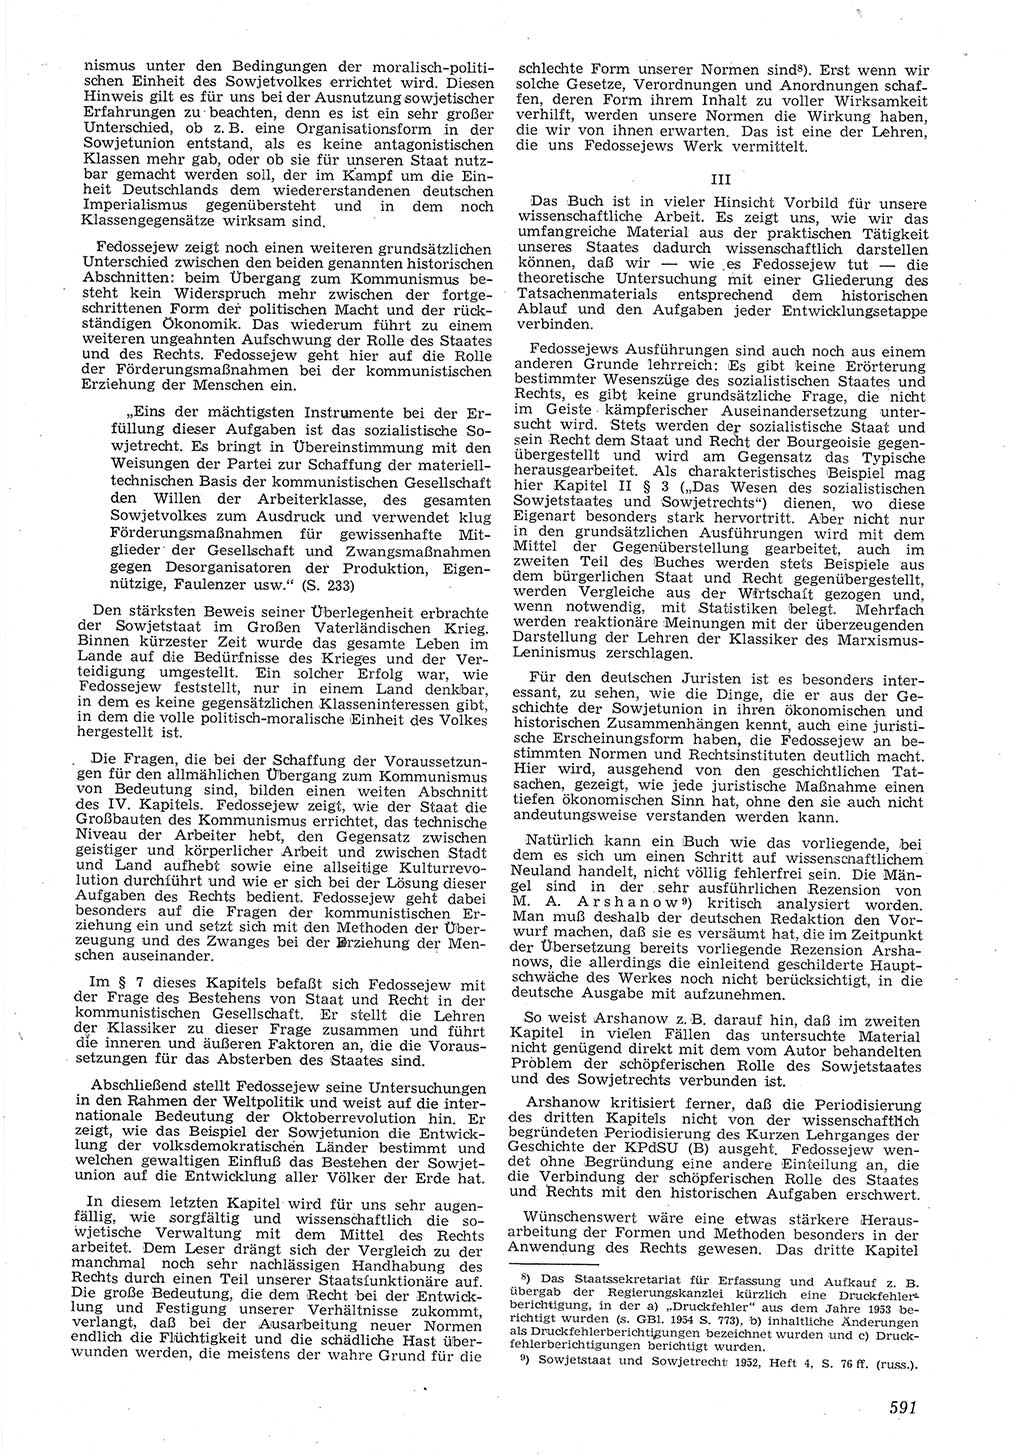 Neue Justiz (NJ), Zeitschrift für Recht und Rechtswissenschaft [Deutsche Demokratische Republik (DDR)], 8. Jahrgang 1954, Seite 591 (NJ DDR 1954, S. 591)